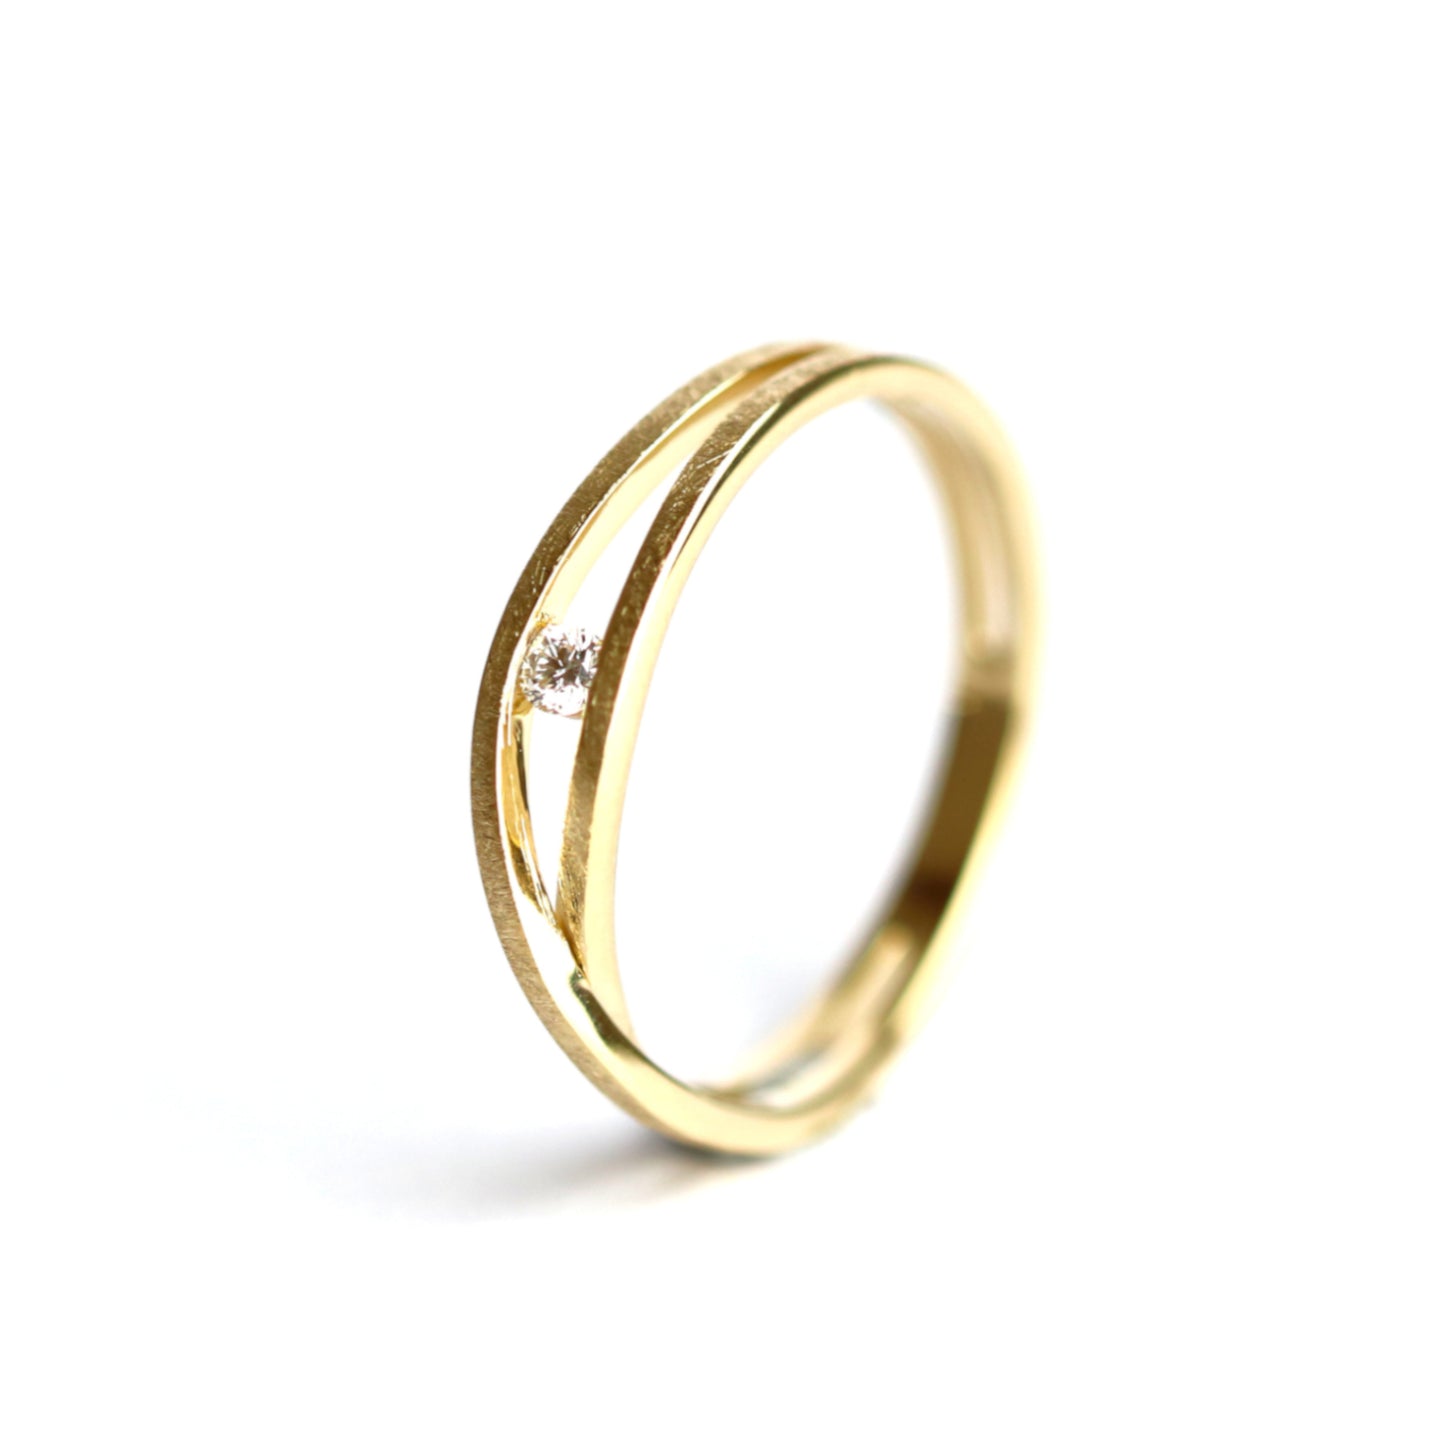 WILHELM MÜLLER - Ring in Gold eismattiert mit Brillant